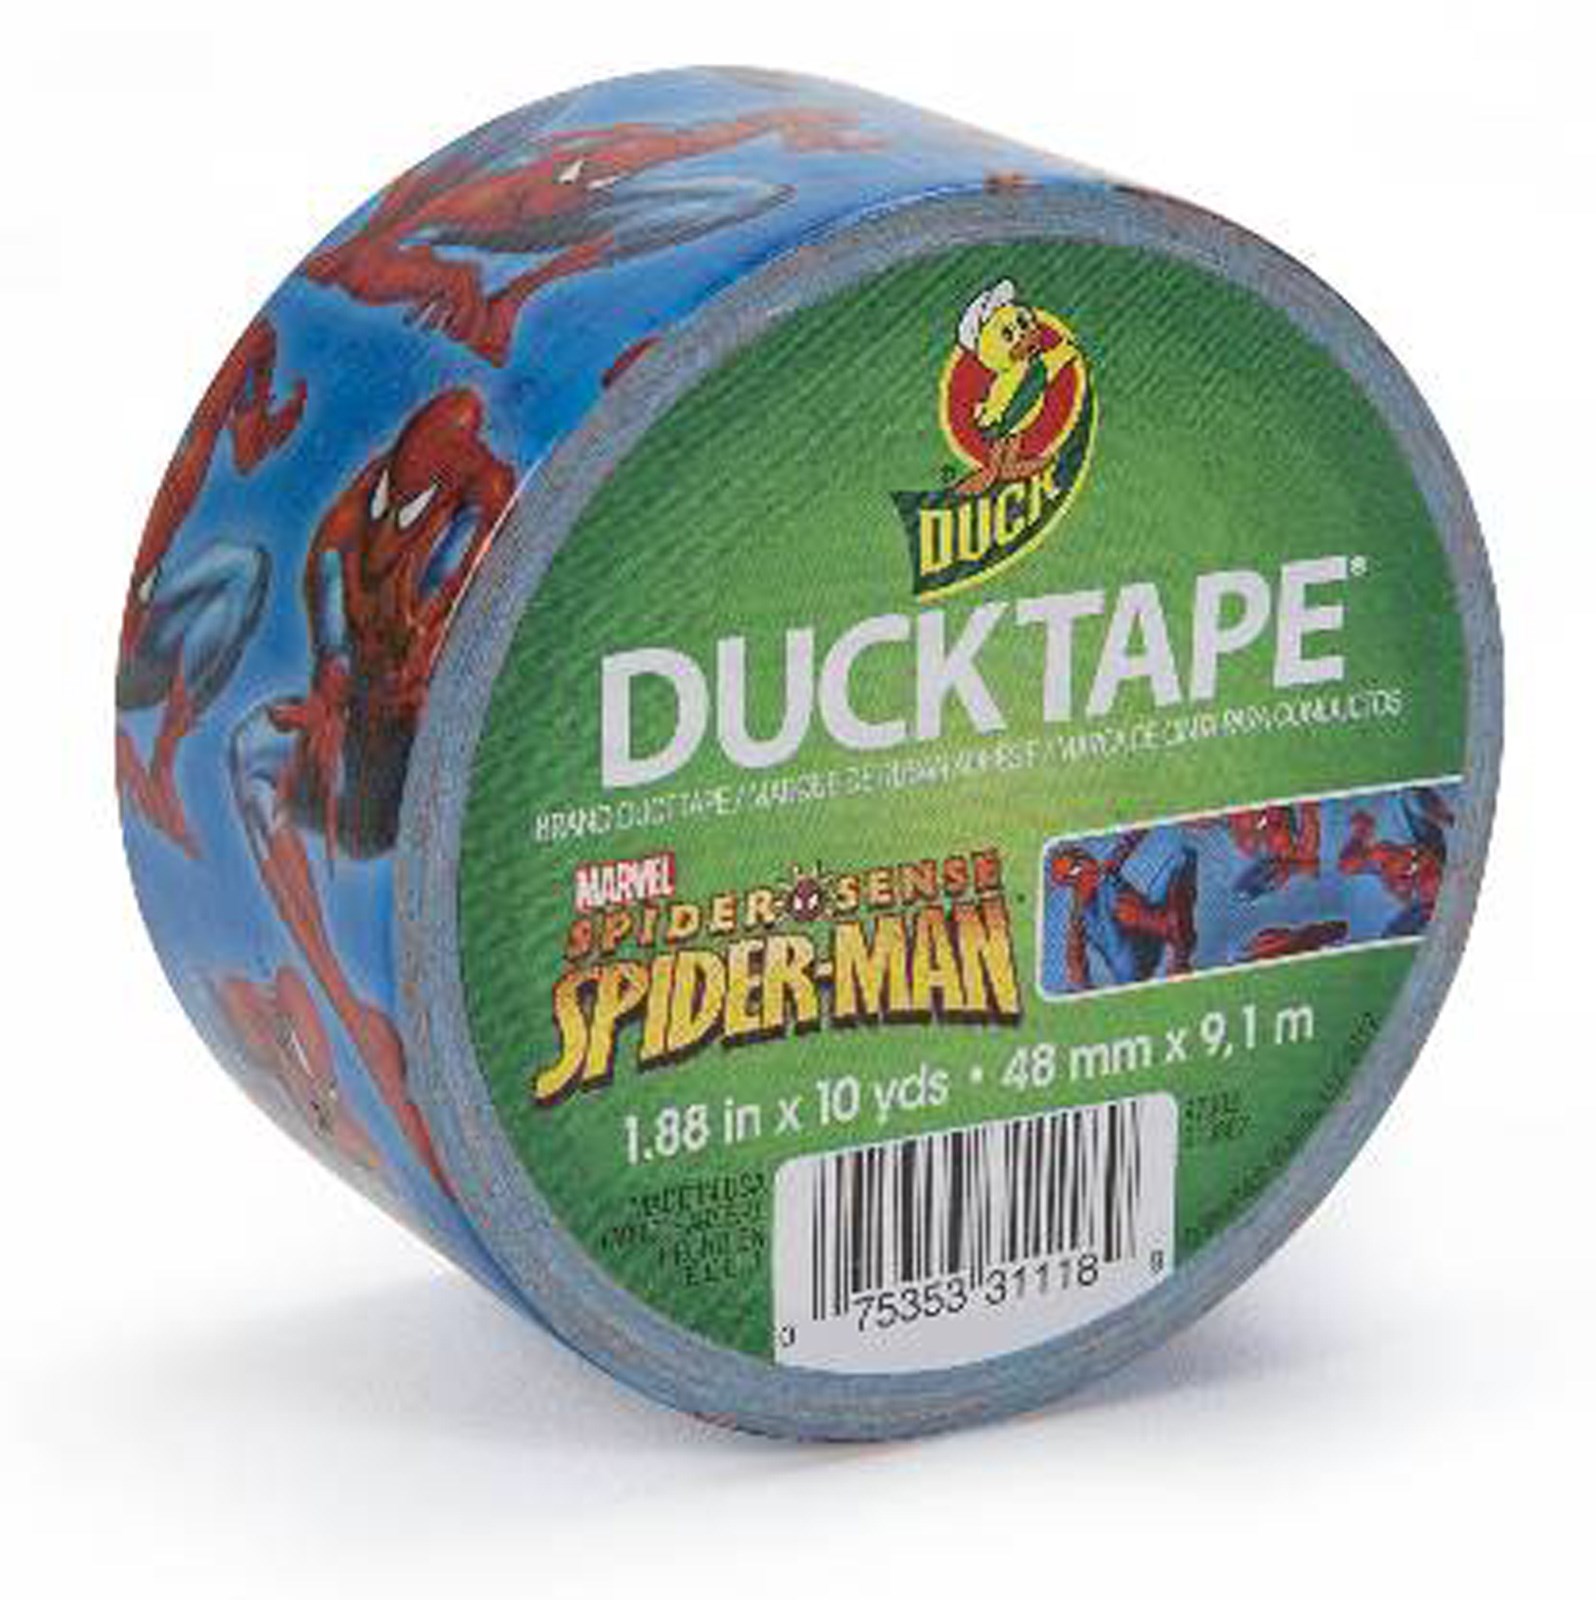 Spider-Man Duck Tape